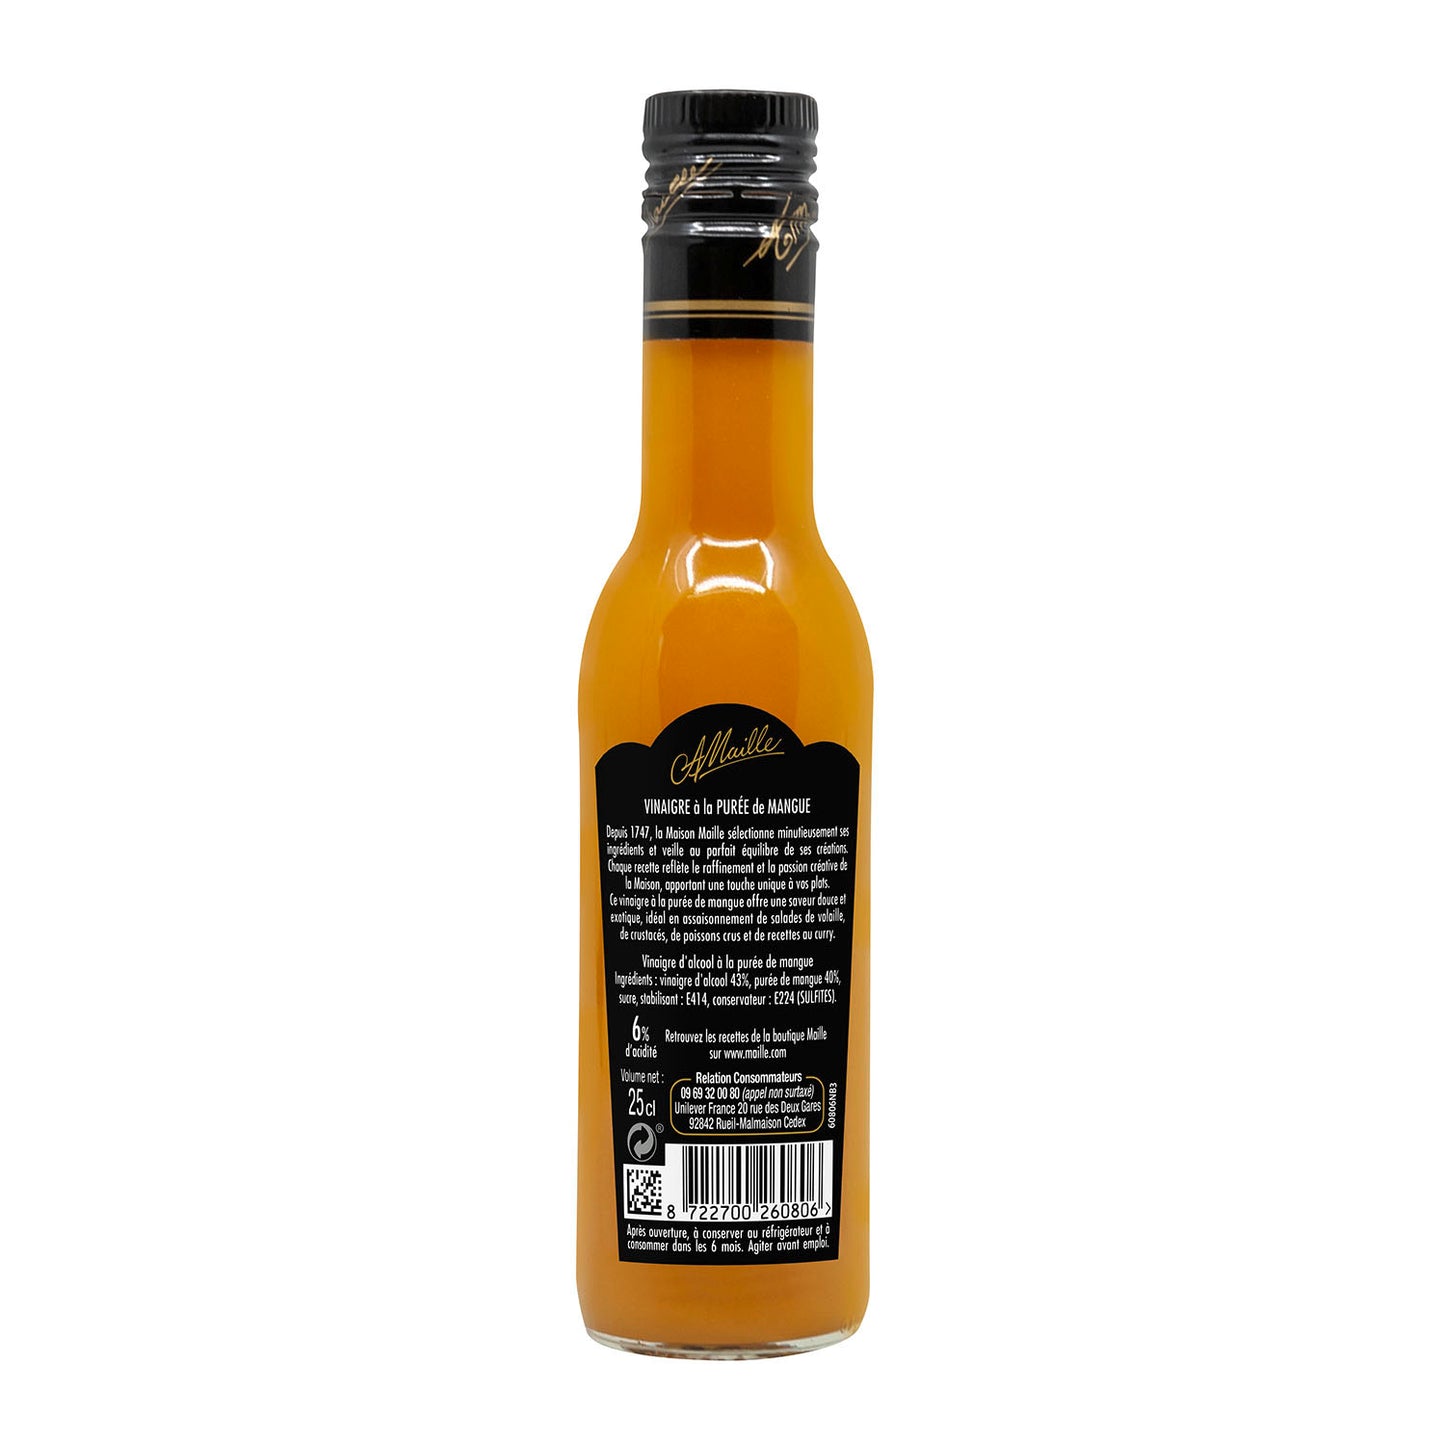 Maille Vinegar Mango 250ml